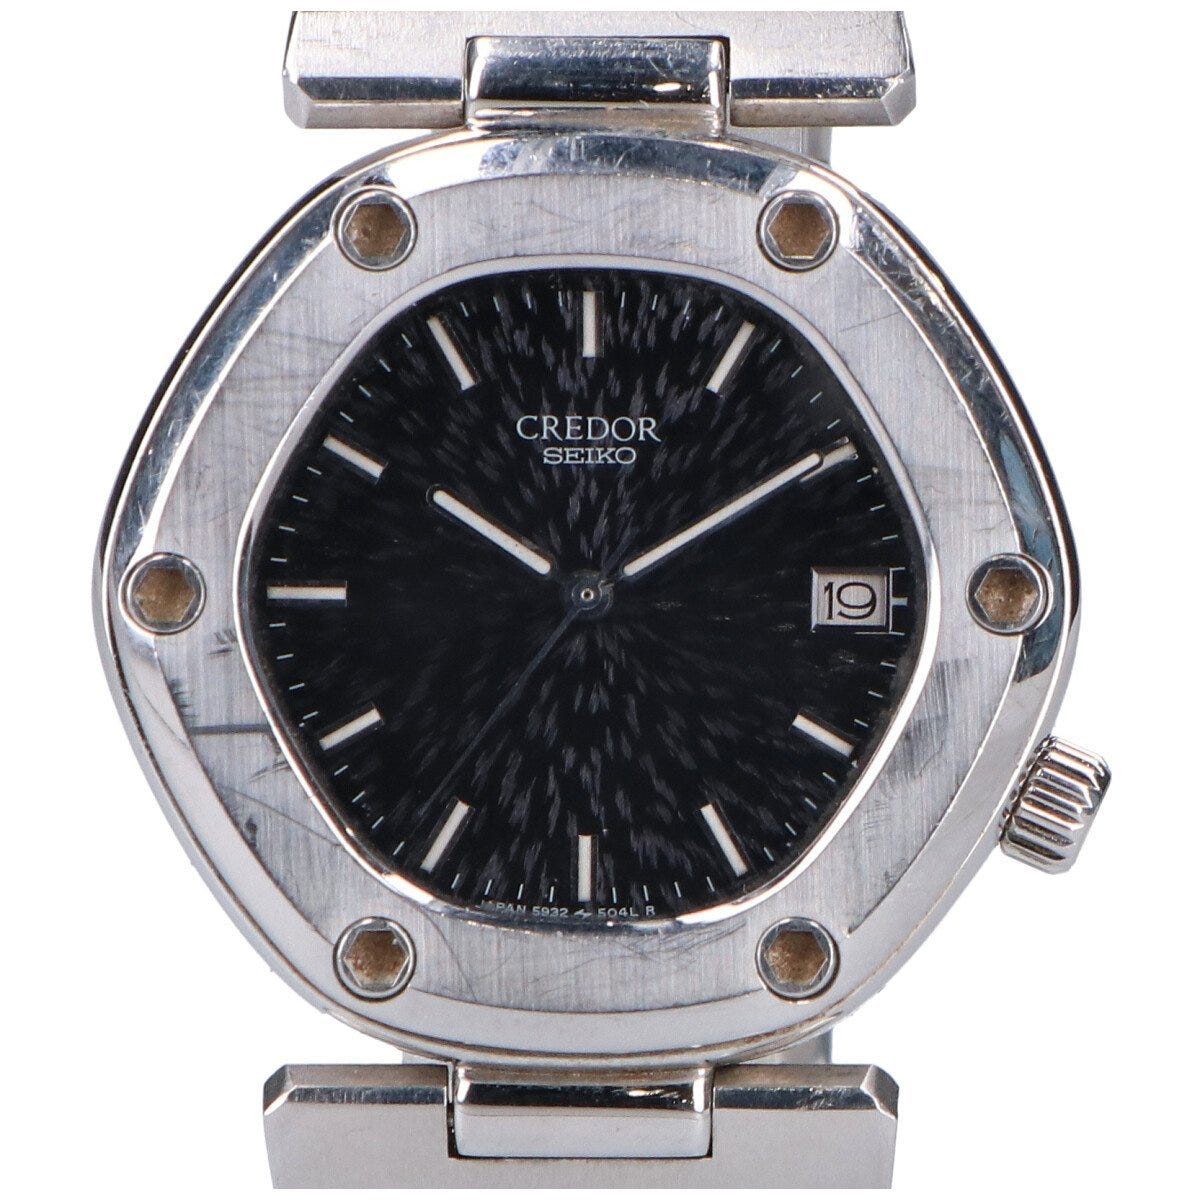 SEIKO セイコー 5932-5020 ロコモティブ ファーストモデル ジェラルド・ジェンタデザイン クオーツ 腕時計 シルバー メンズ